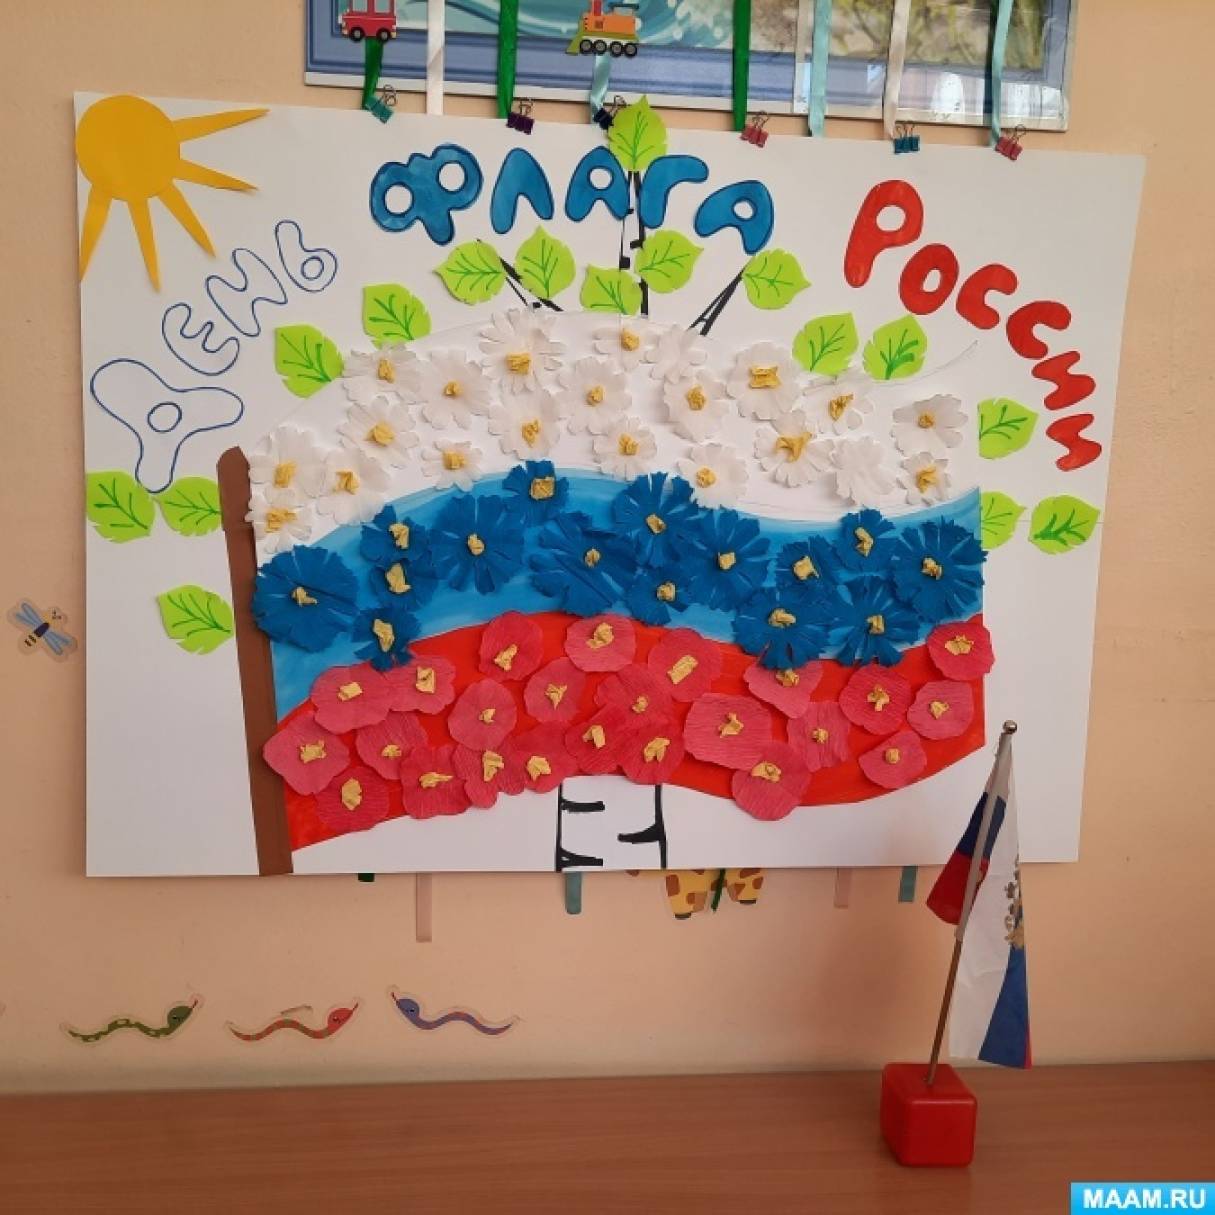 Оформление зала на день российского флага